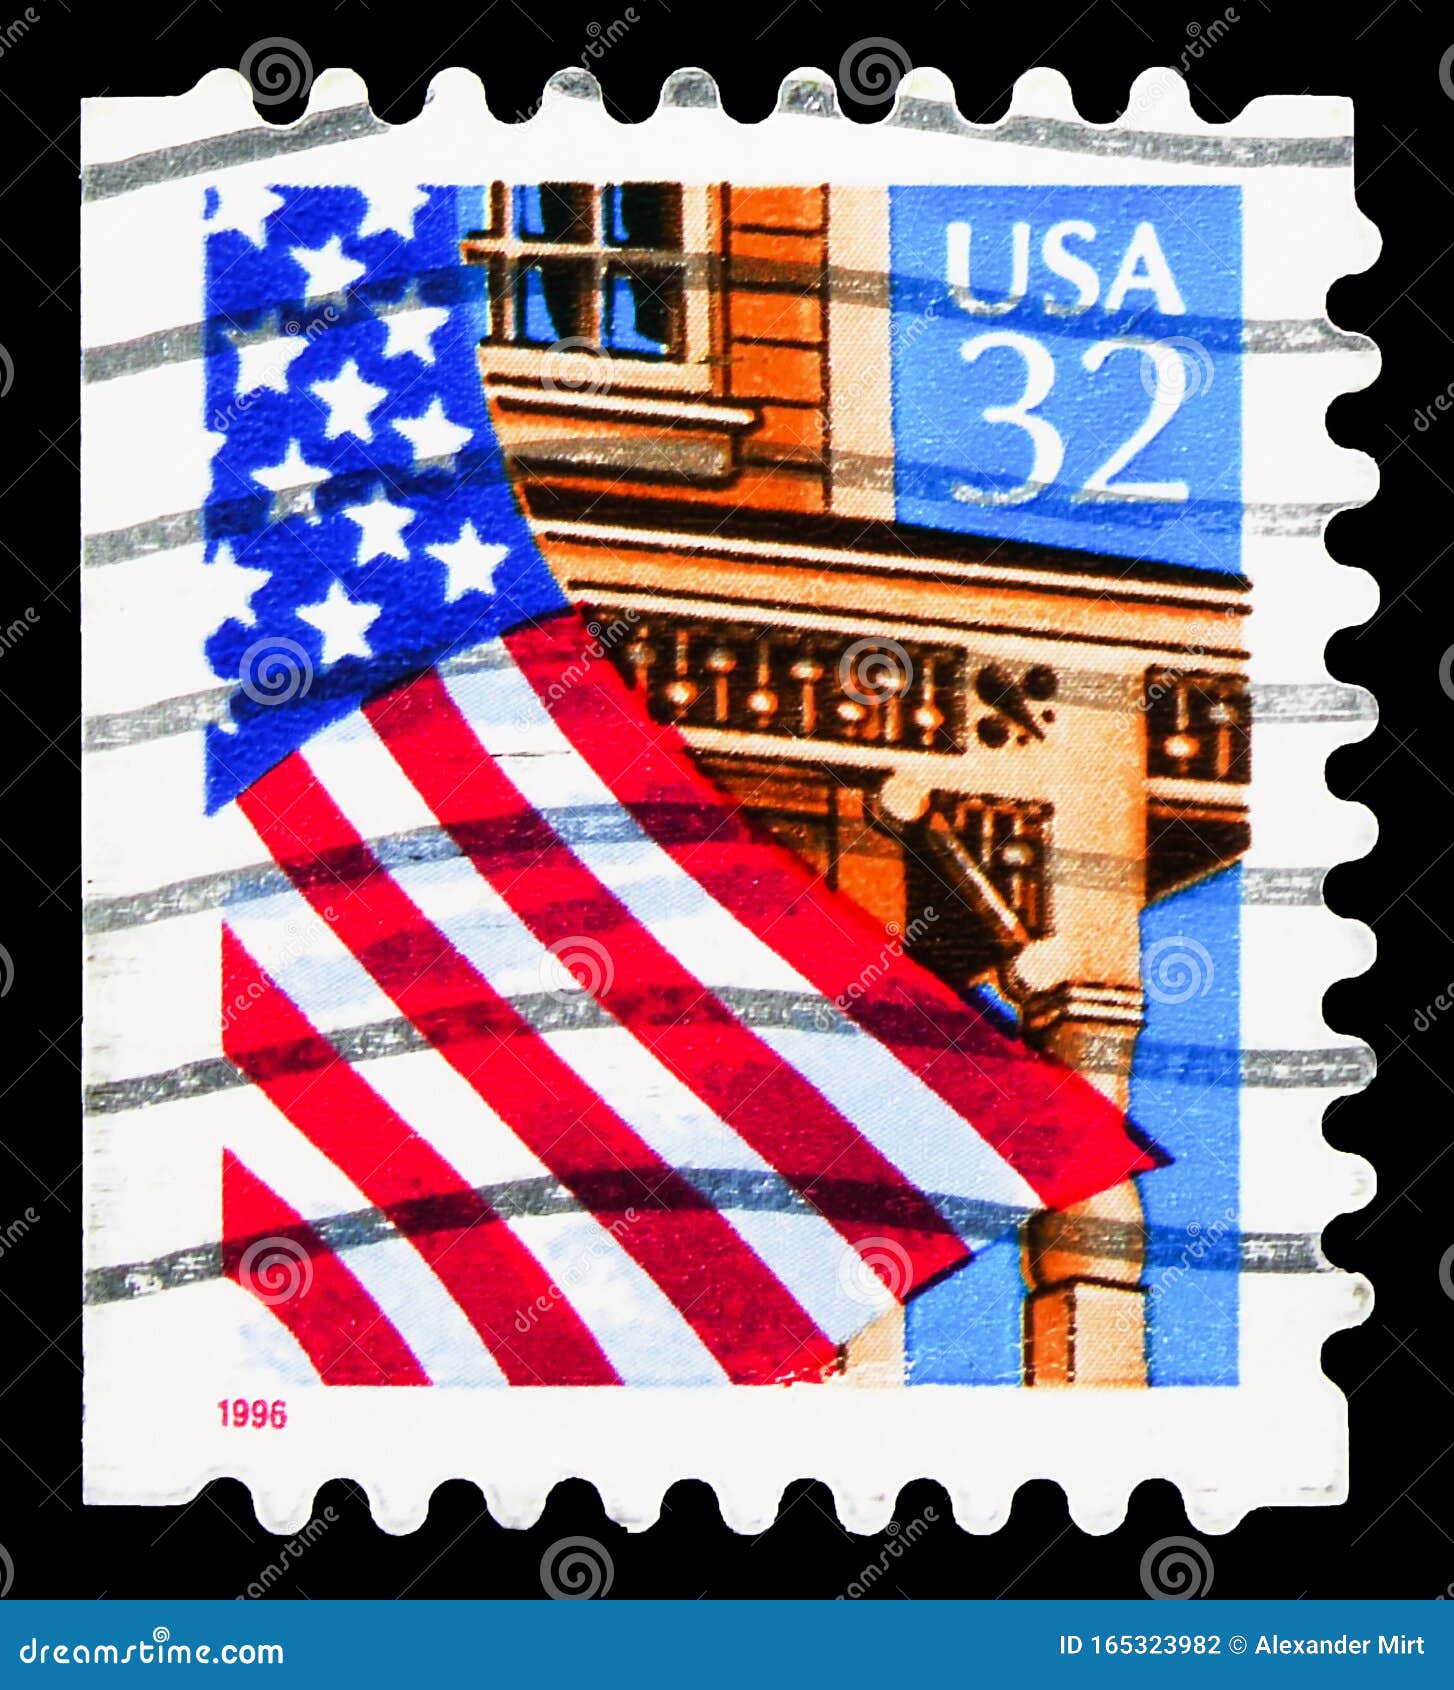 MOSKAU, RUSSLAND - 30. SEPTEMBER 2019: Briefmarken in den Vereinigten Staaten zeigen Flag over Porch, serie, ca. 1996